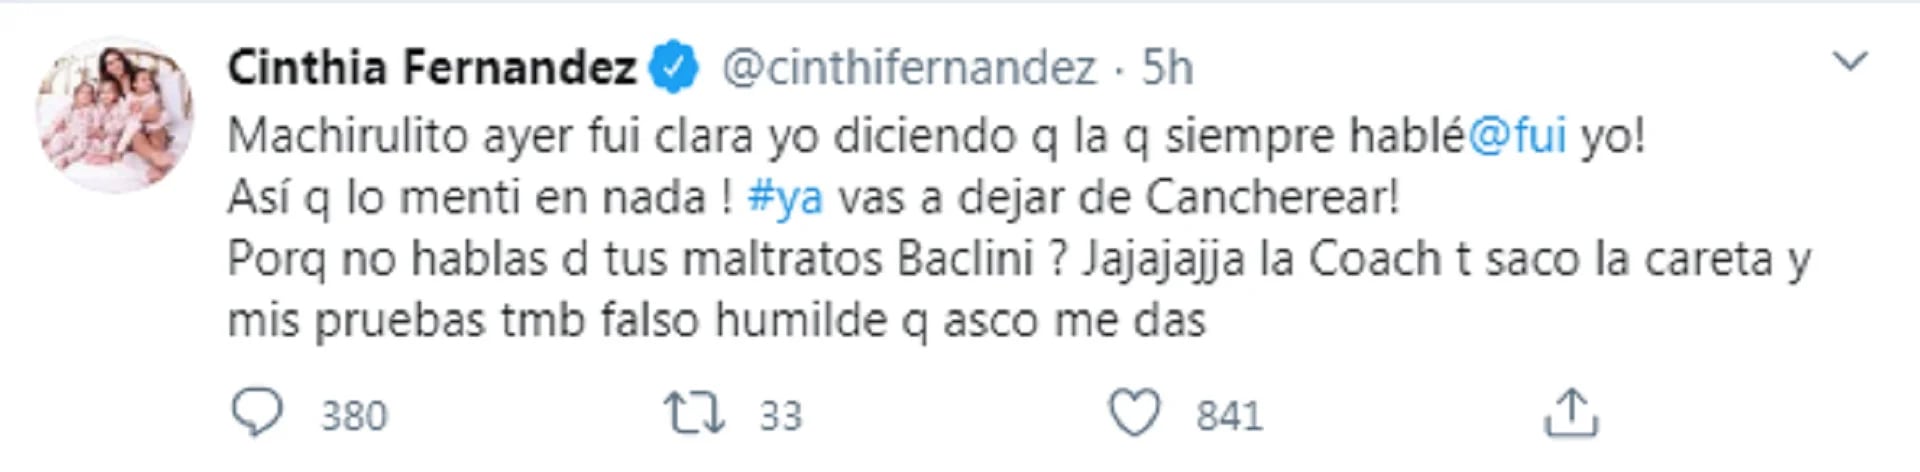 El tuit de Cinthia Fernández